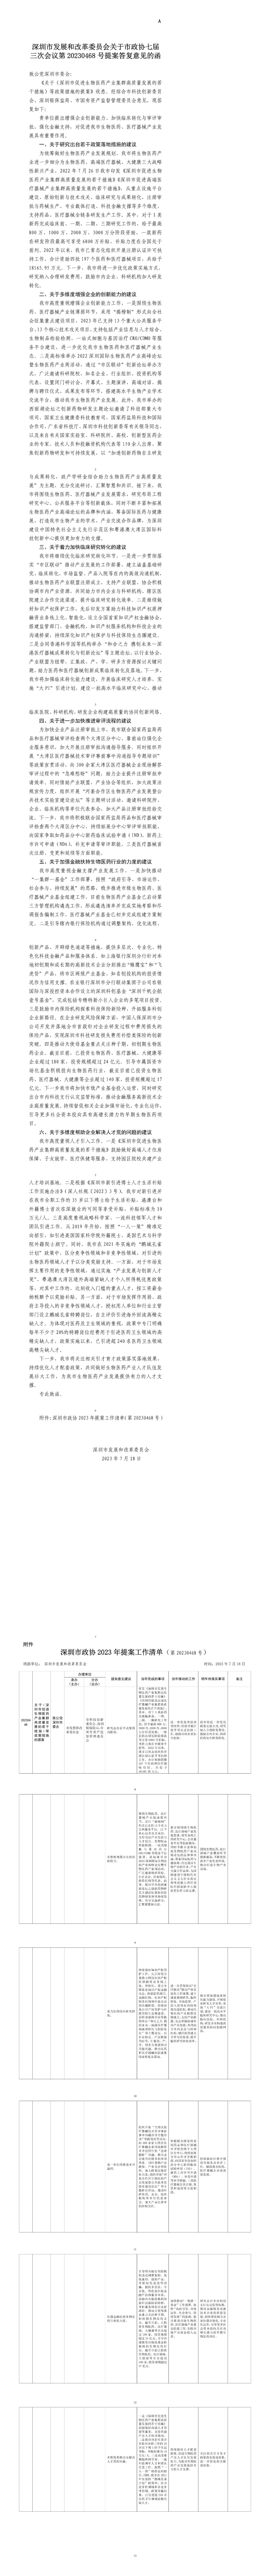 深圳市发展和改革委员会关于市政协七届三次会议第20230468号提案答复意见的函.jpg